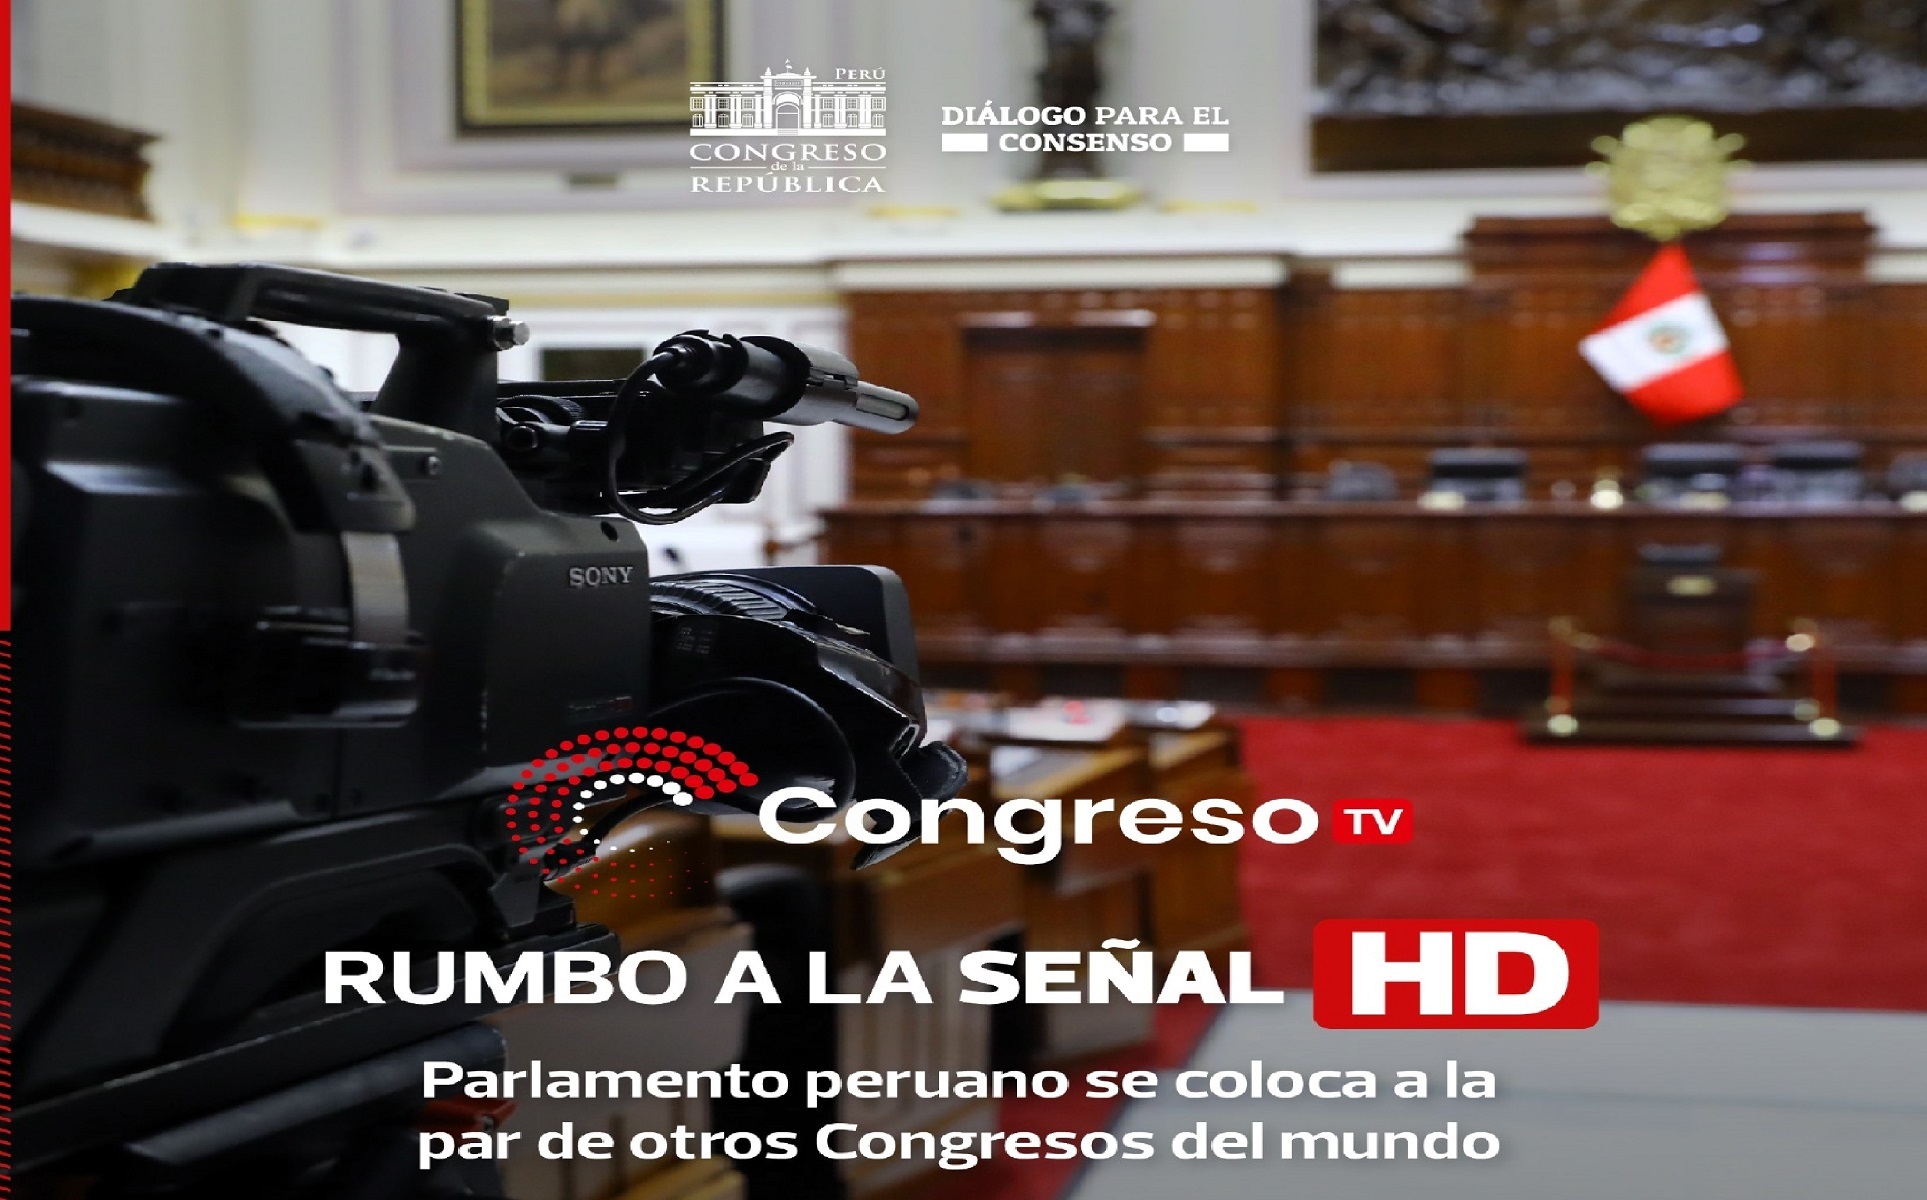 Congreso TV empieza lanzamiento de pruebas en señal digital, colocándose a la par de otros Parlamentos del mundo.